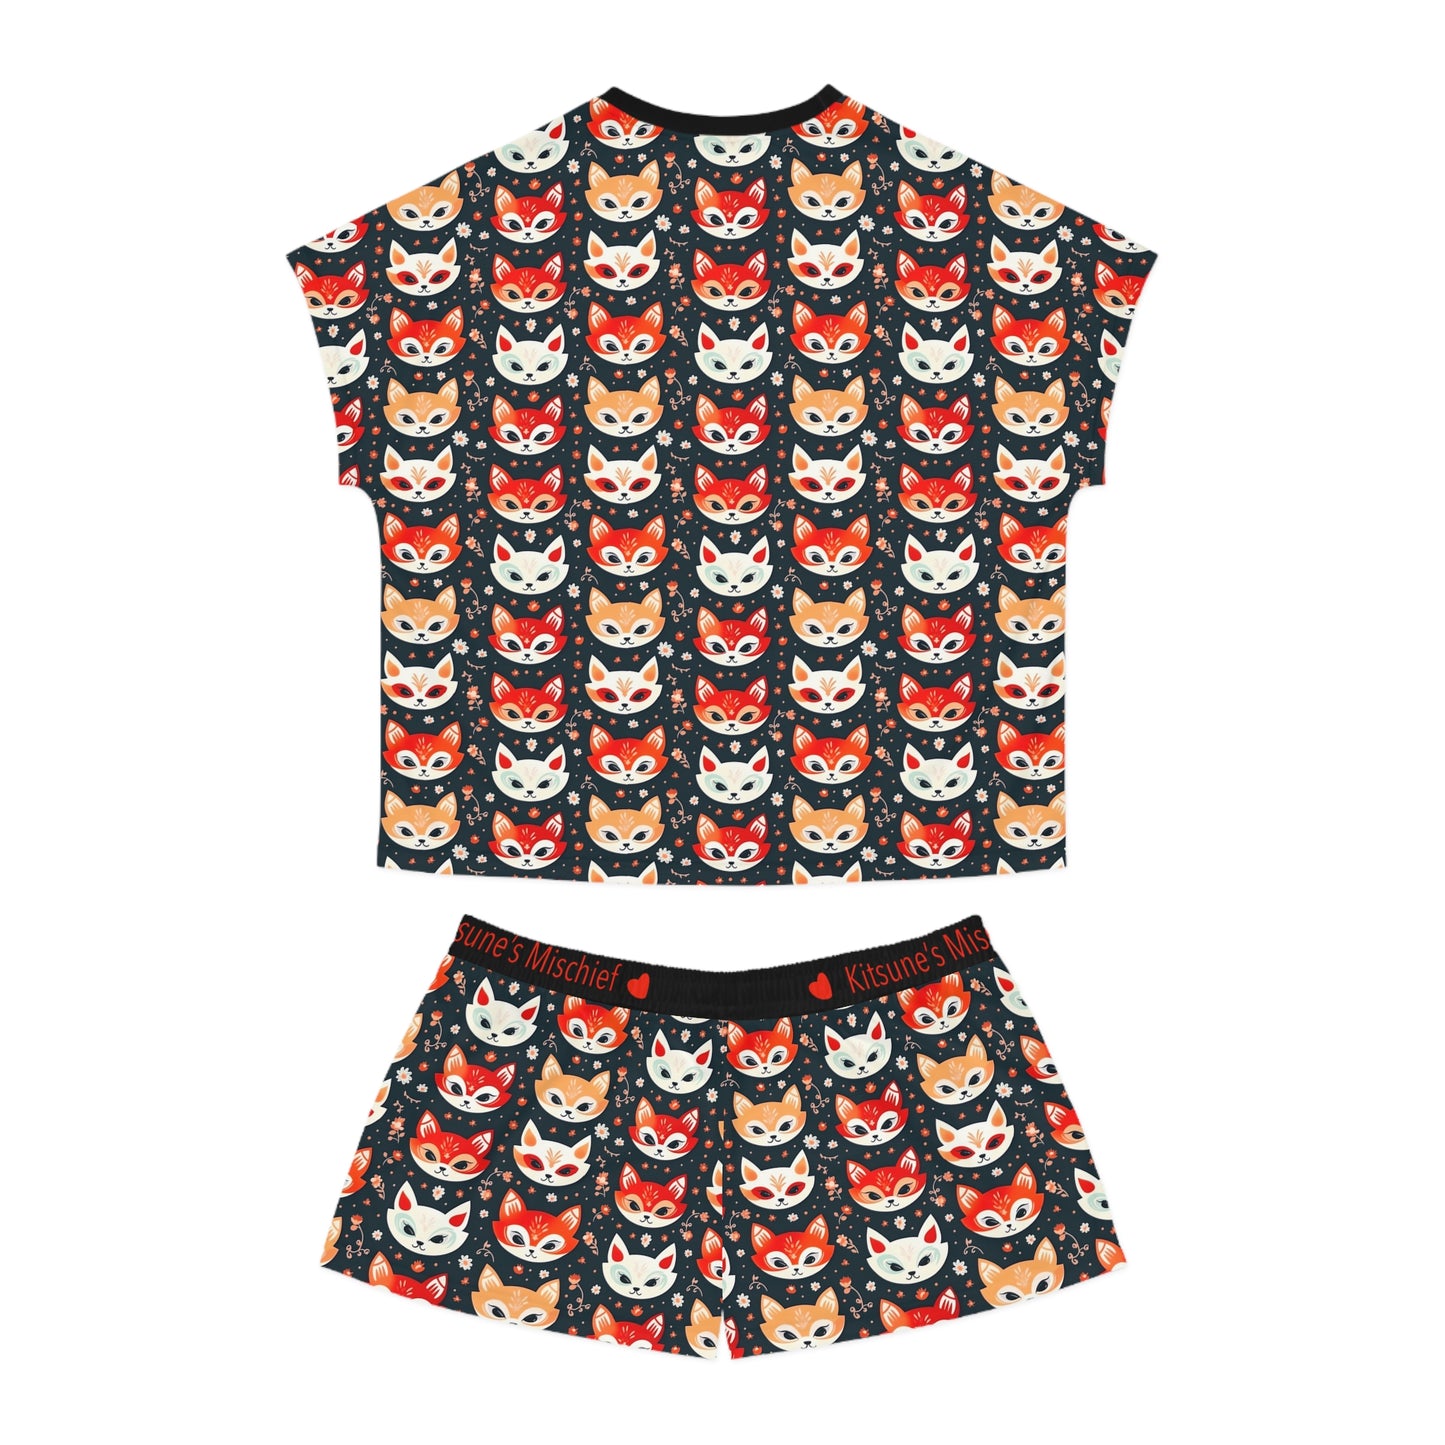 Kitsune's Mischief Dark Version Women's Short Pajama Set